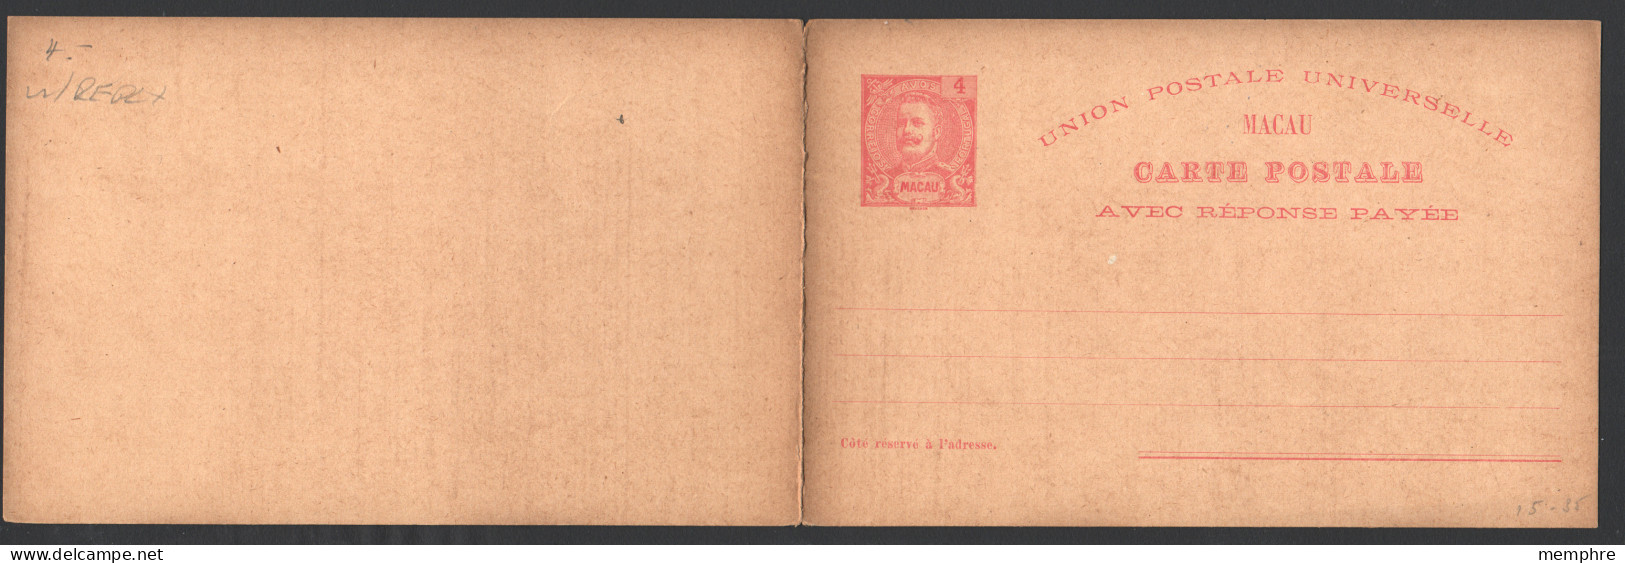 1903  Carte Postale Avec Réponse Payée Carlos 4 Avos  Neuve - Lettres & Documents